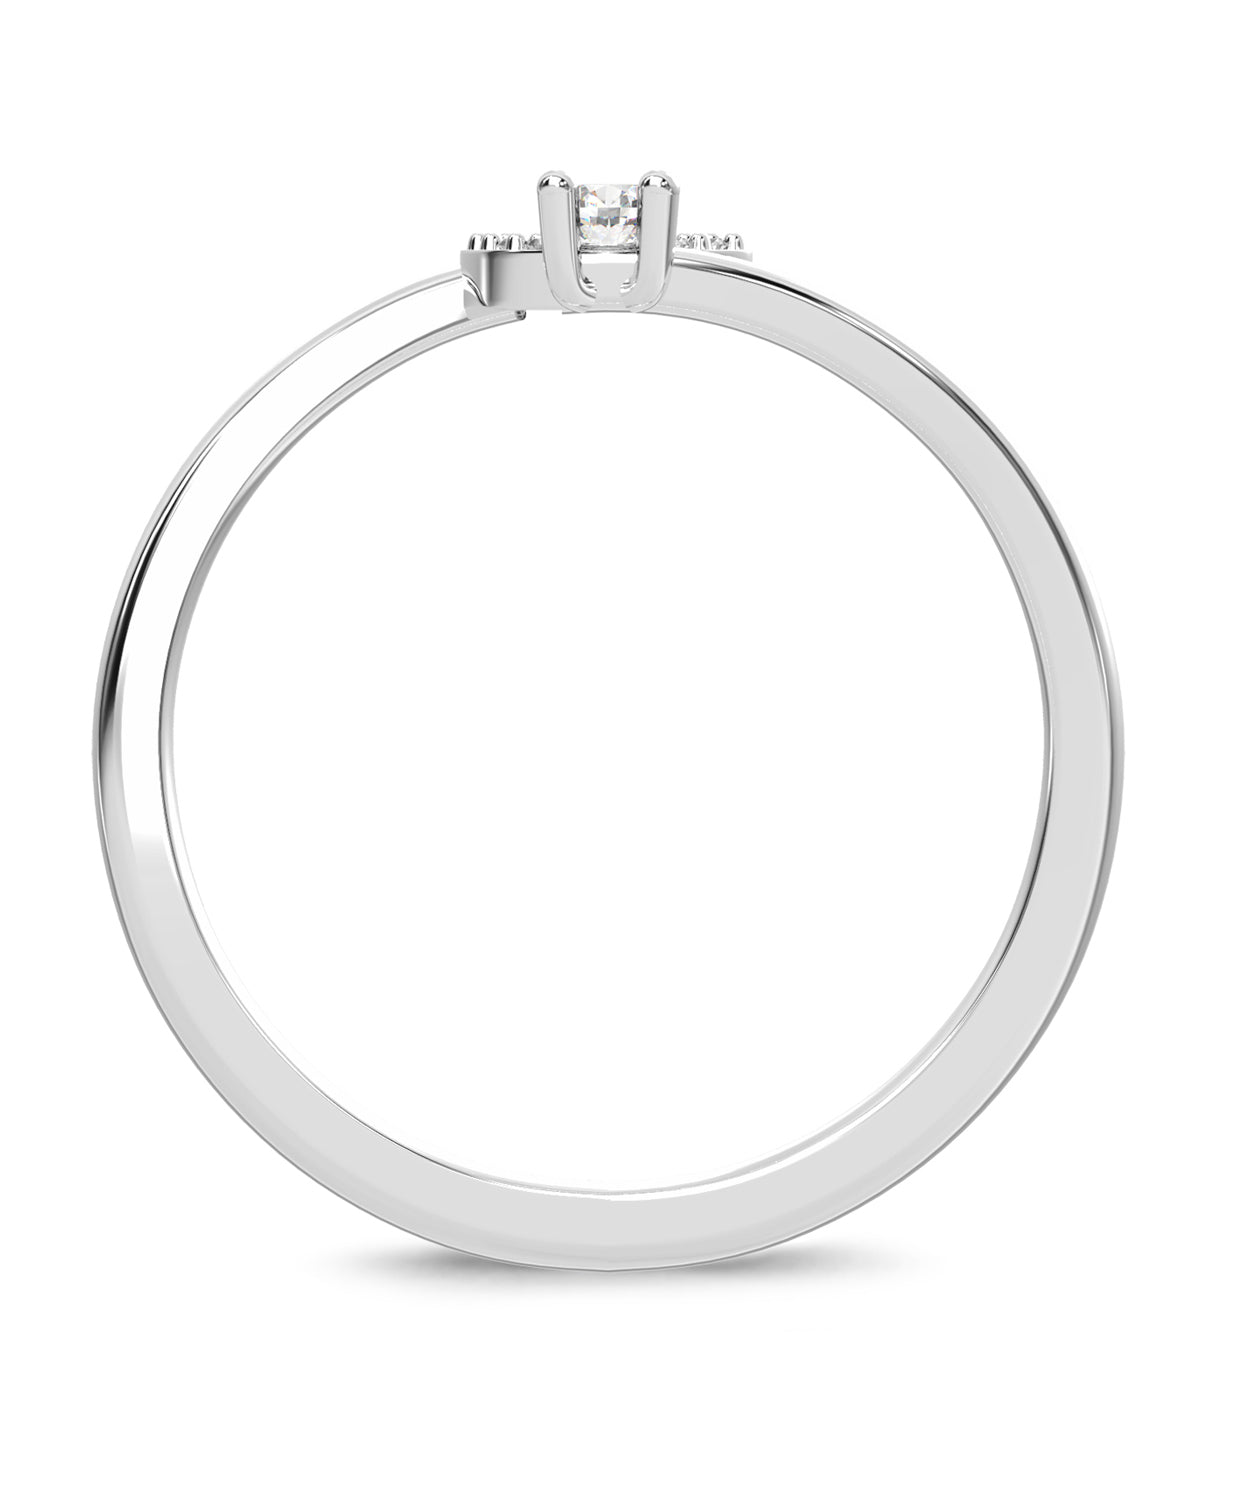 ESEMCO Diamond 18k White Gold Letter C Initial Open Ring View 2